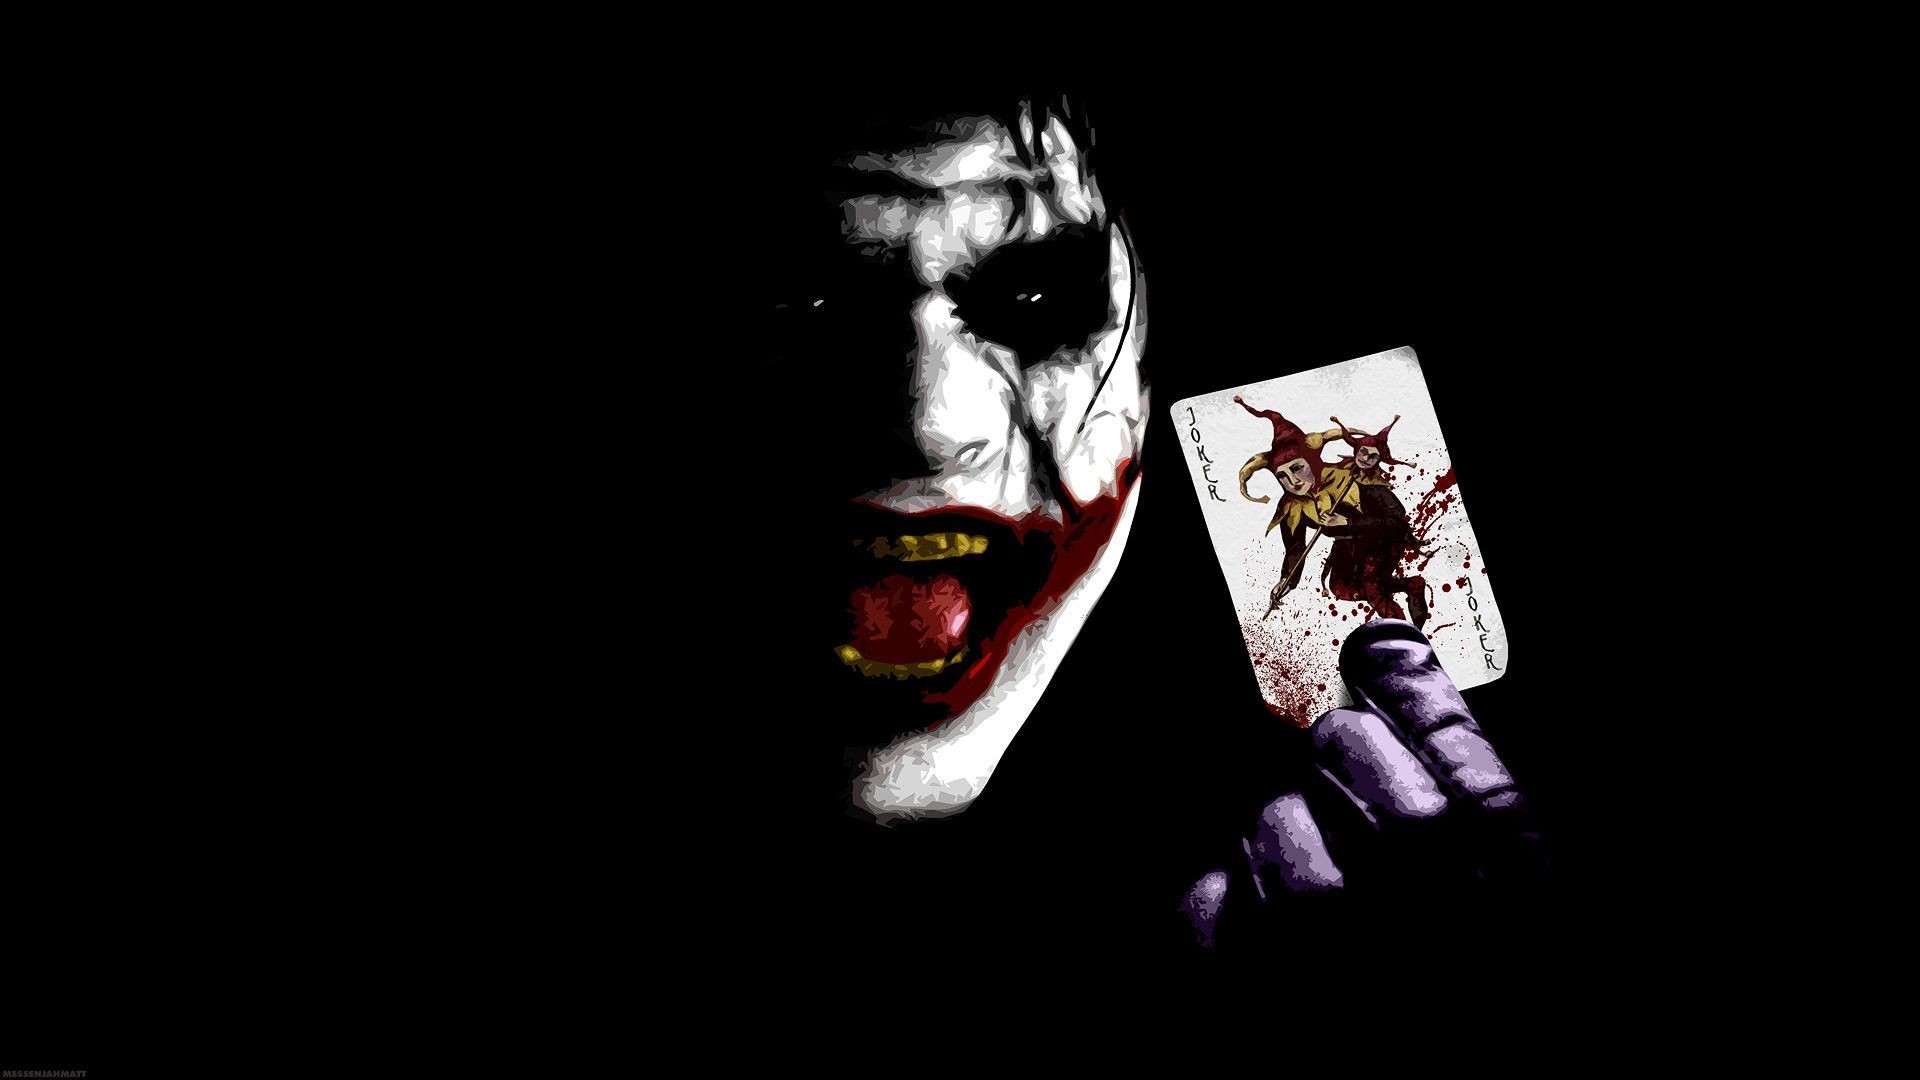 Joker Wallpaper in Dangerous Mod with Joker card.